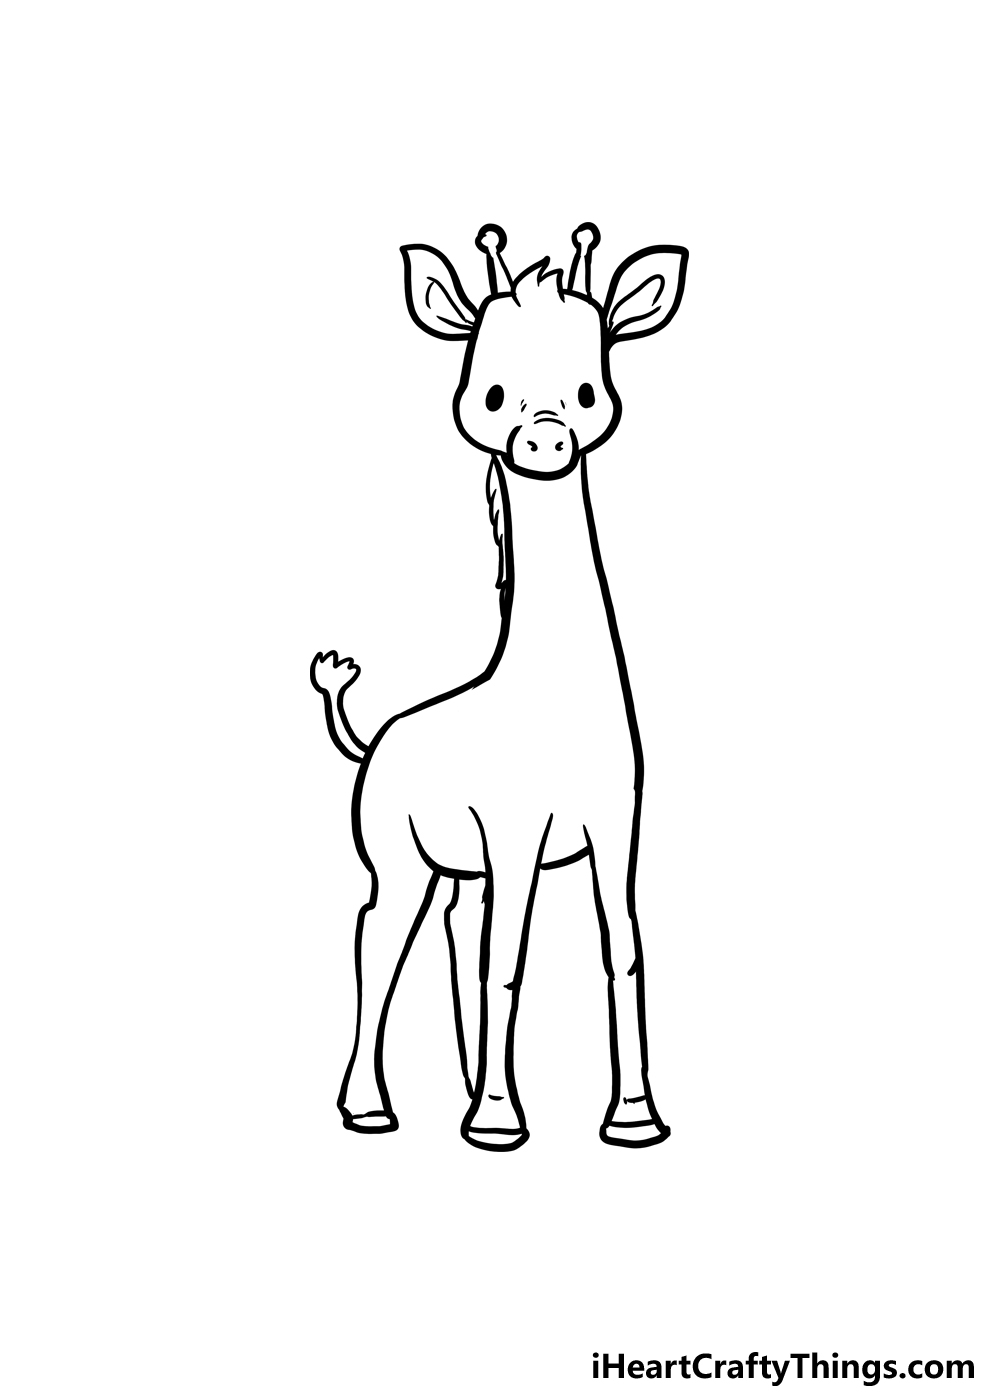 How to Draw A Cute Giraffe step 4